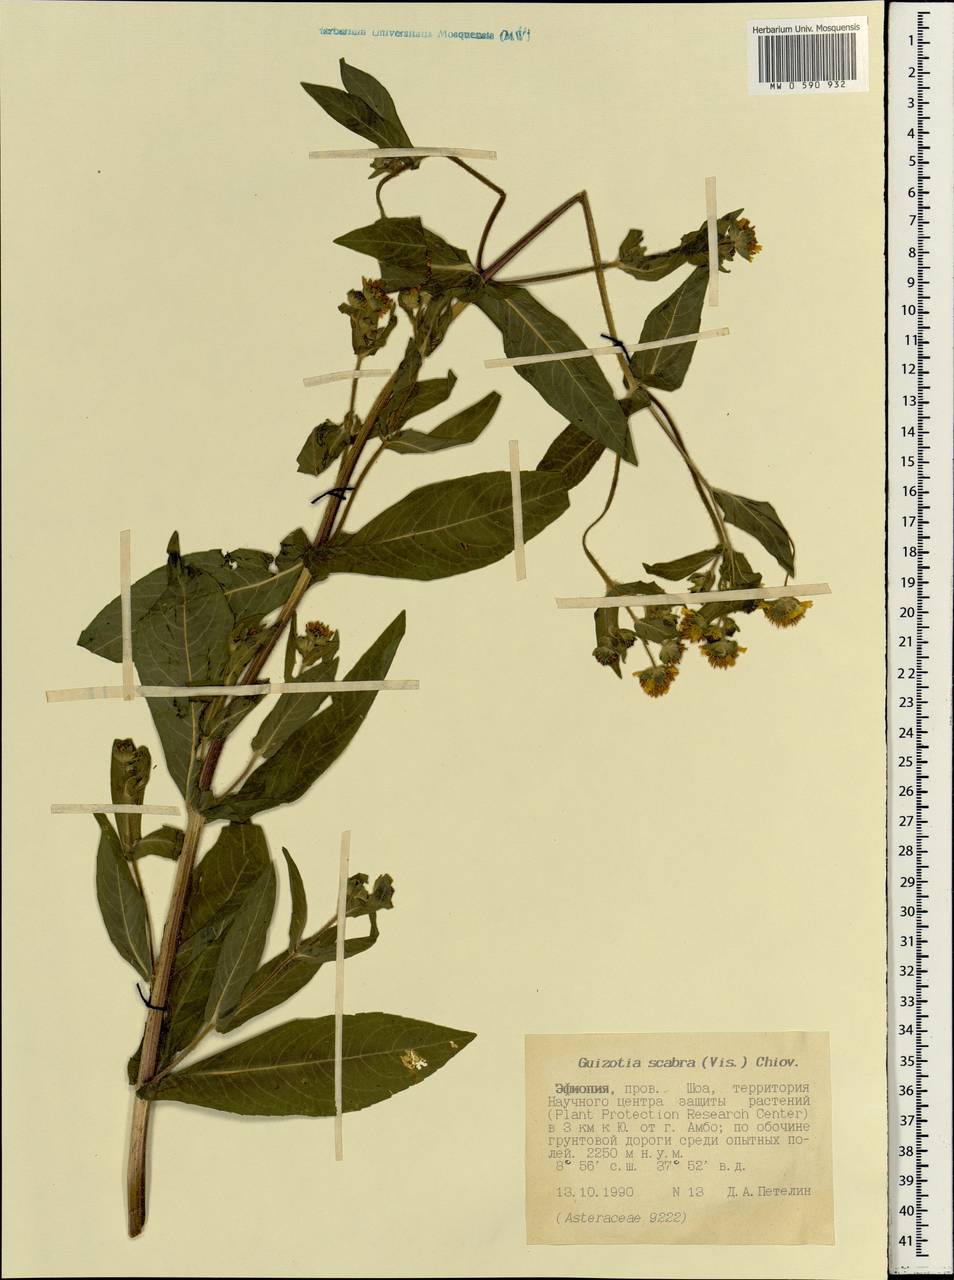 Guizotia scabra (Vis.) Chiov., Africa (AFR) (Ethiopia)